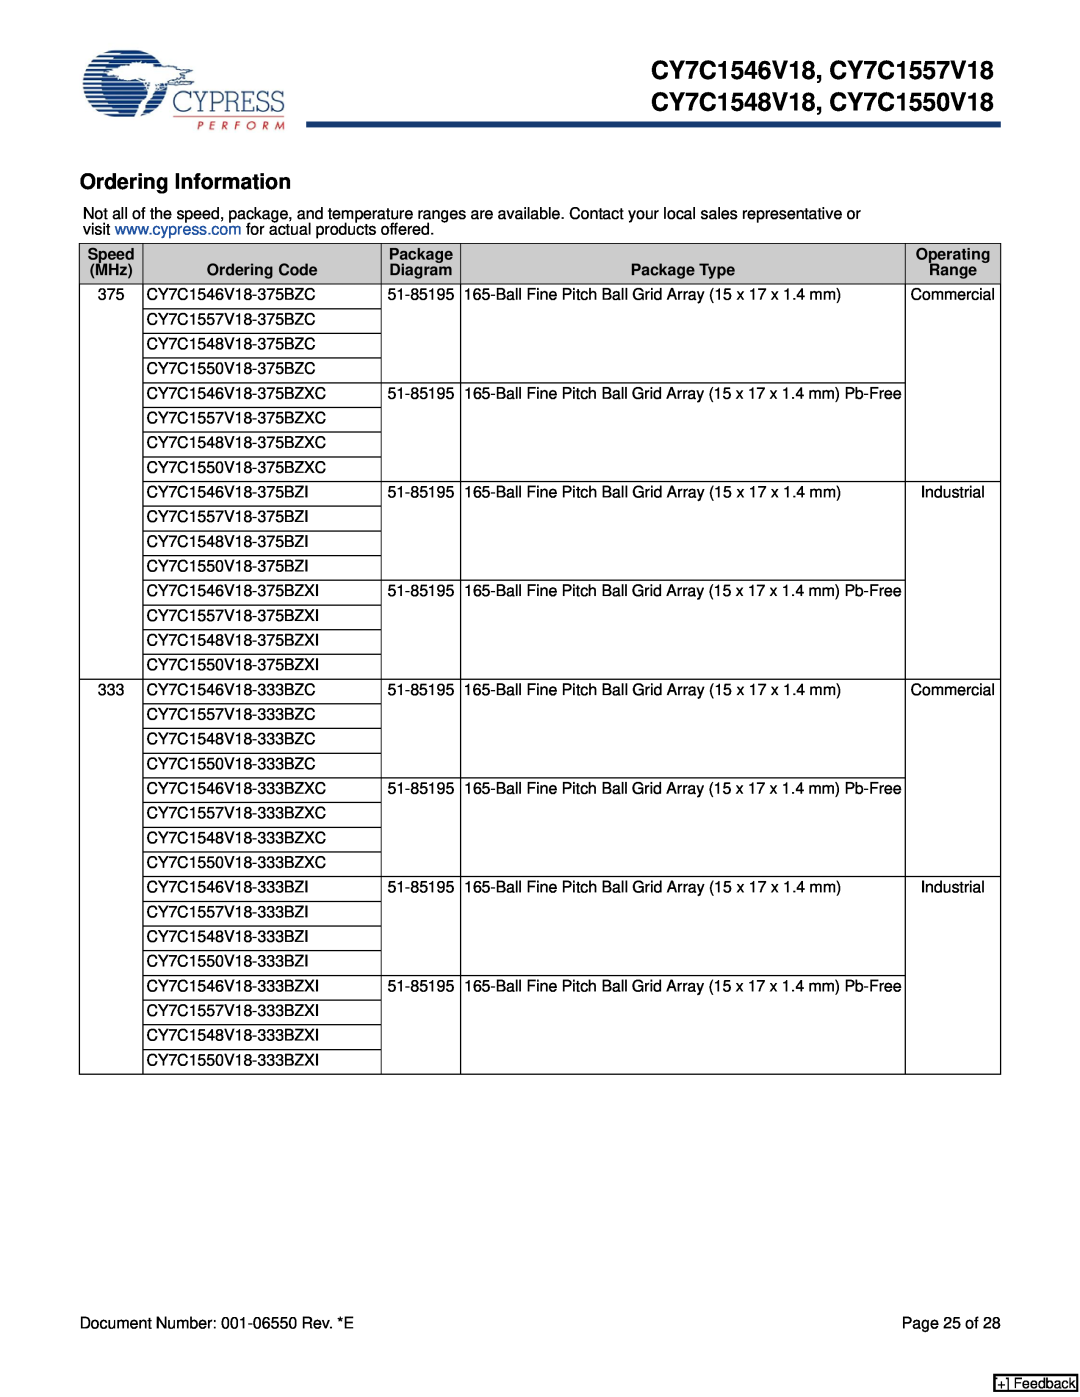 Cypress manual Ordering Information, CY7C1546V18, CY7C1557V18 CY7C1548V18, CY7C1550V18 